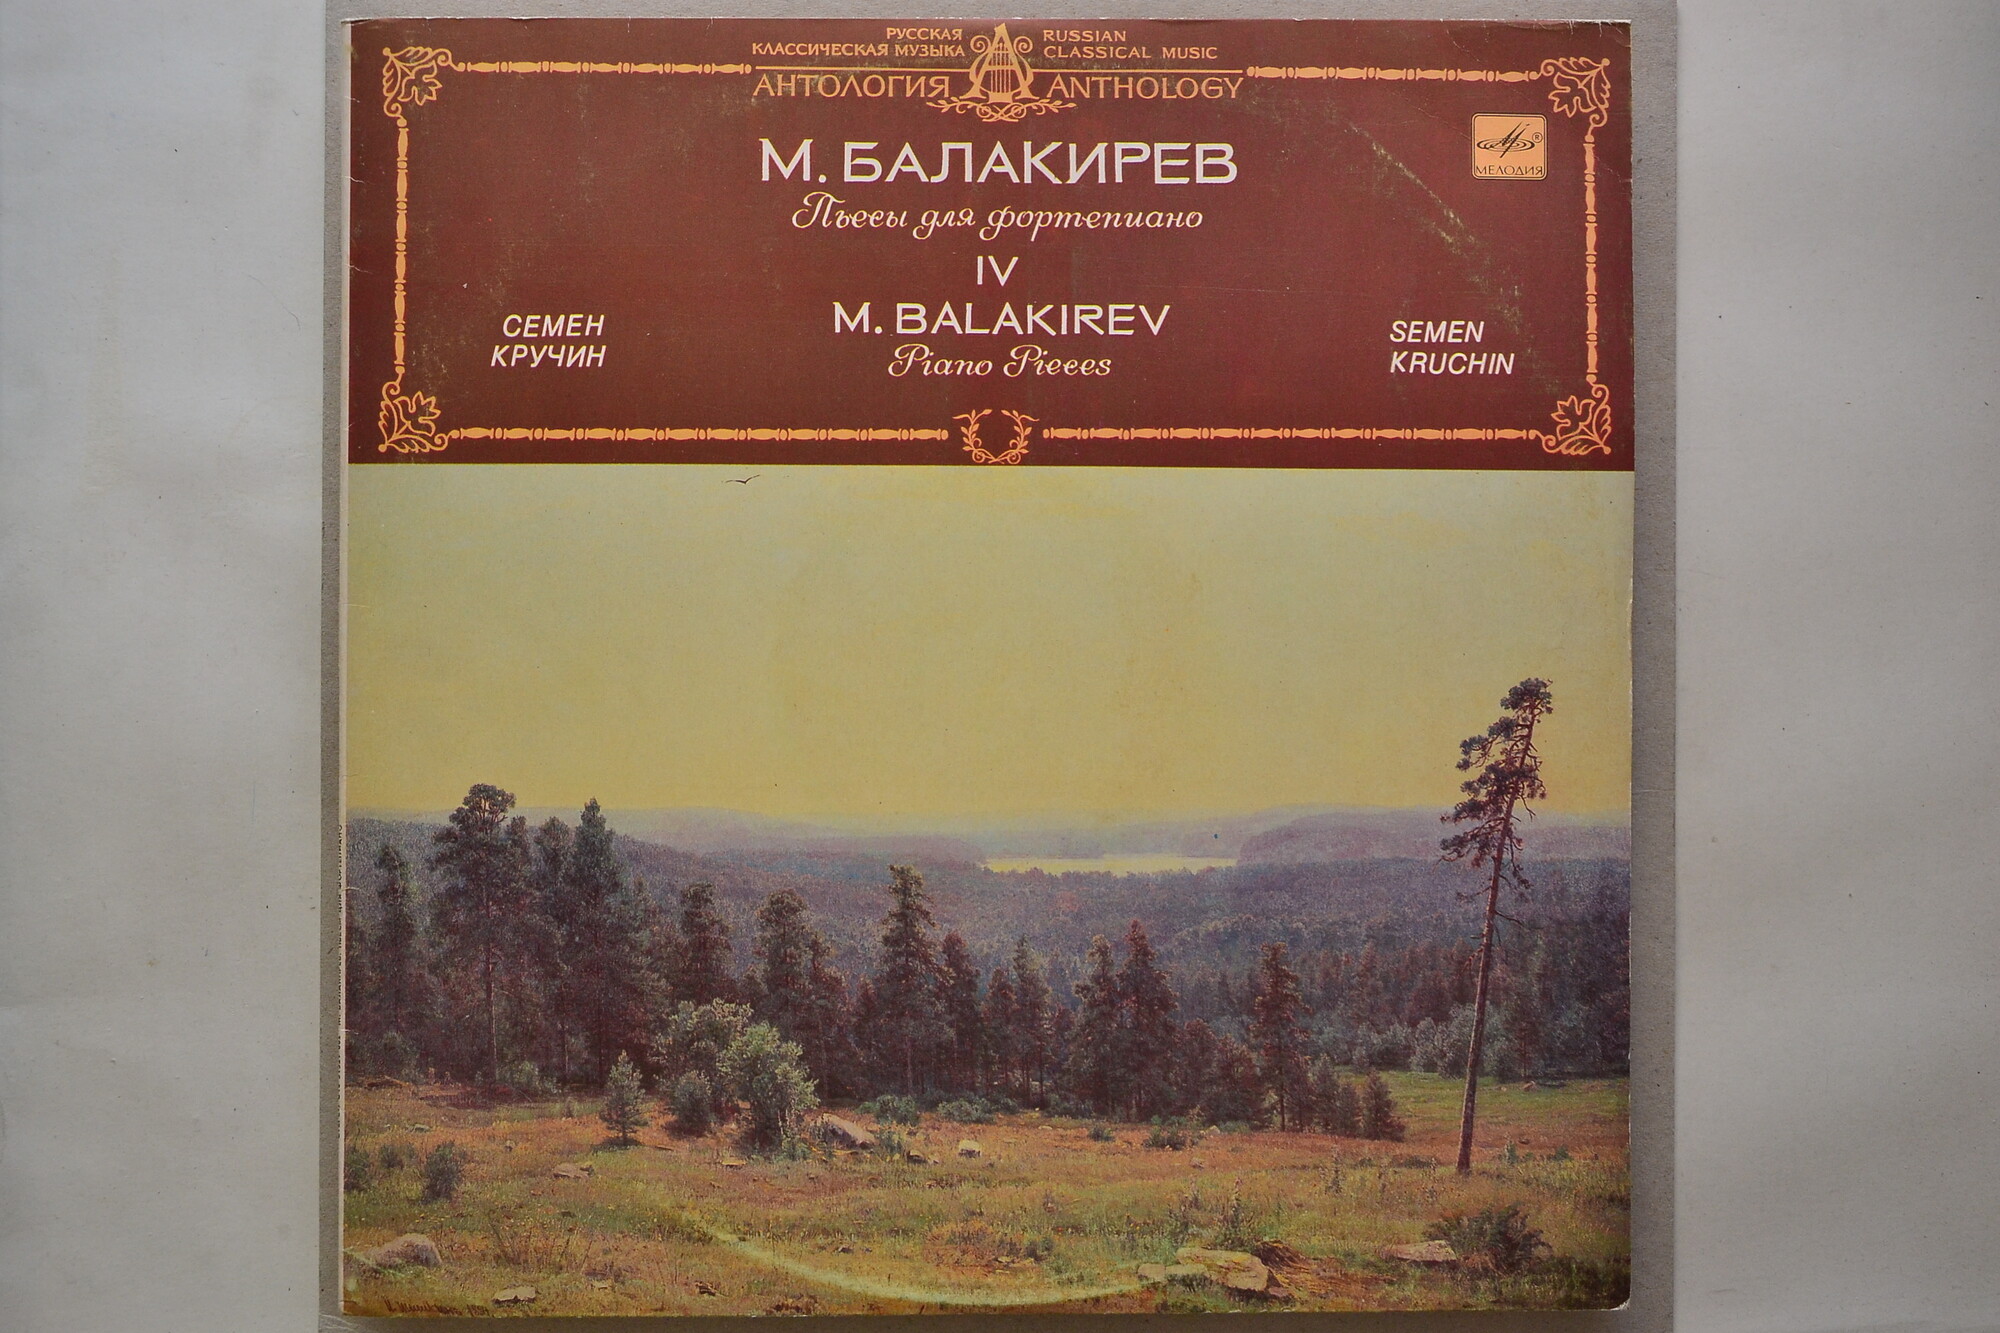 М. БАЛАКИРЕВ (1837-1910): Пьесы для ф-но (С. Кручин)